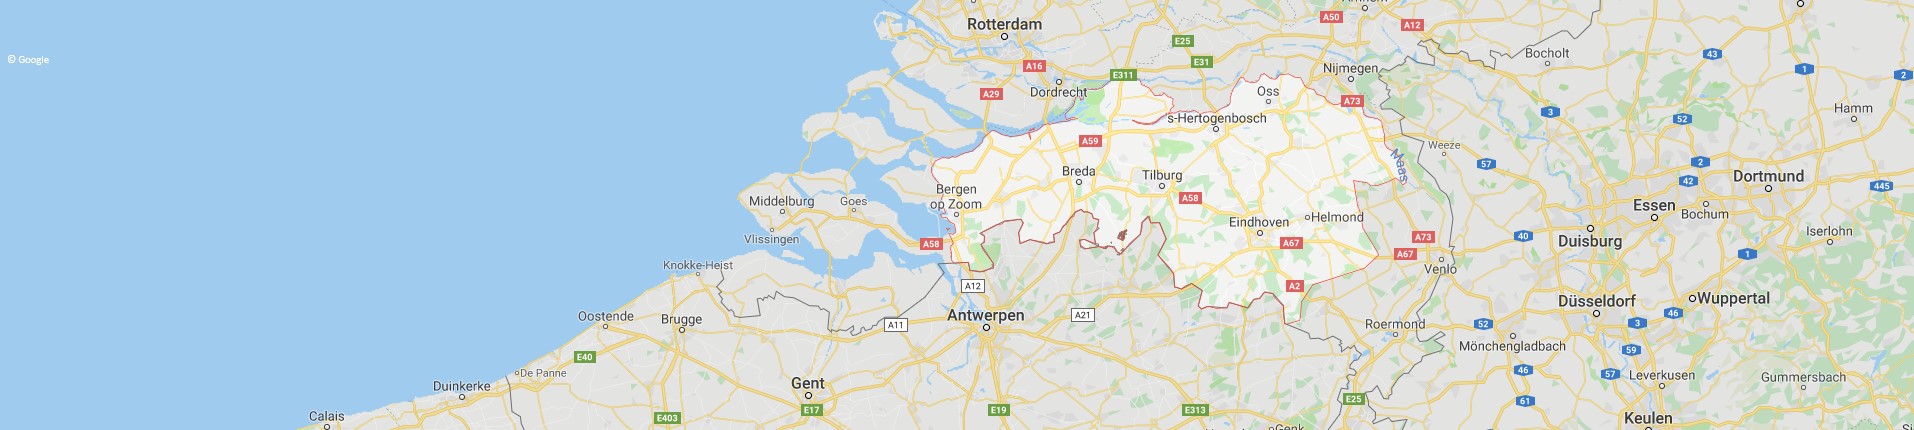 Goud verkopen in provincie Noord-Brabant